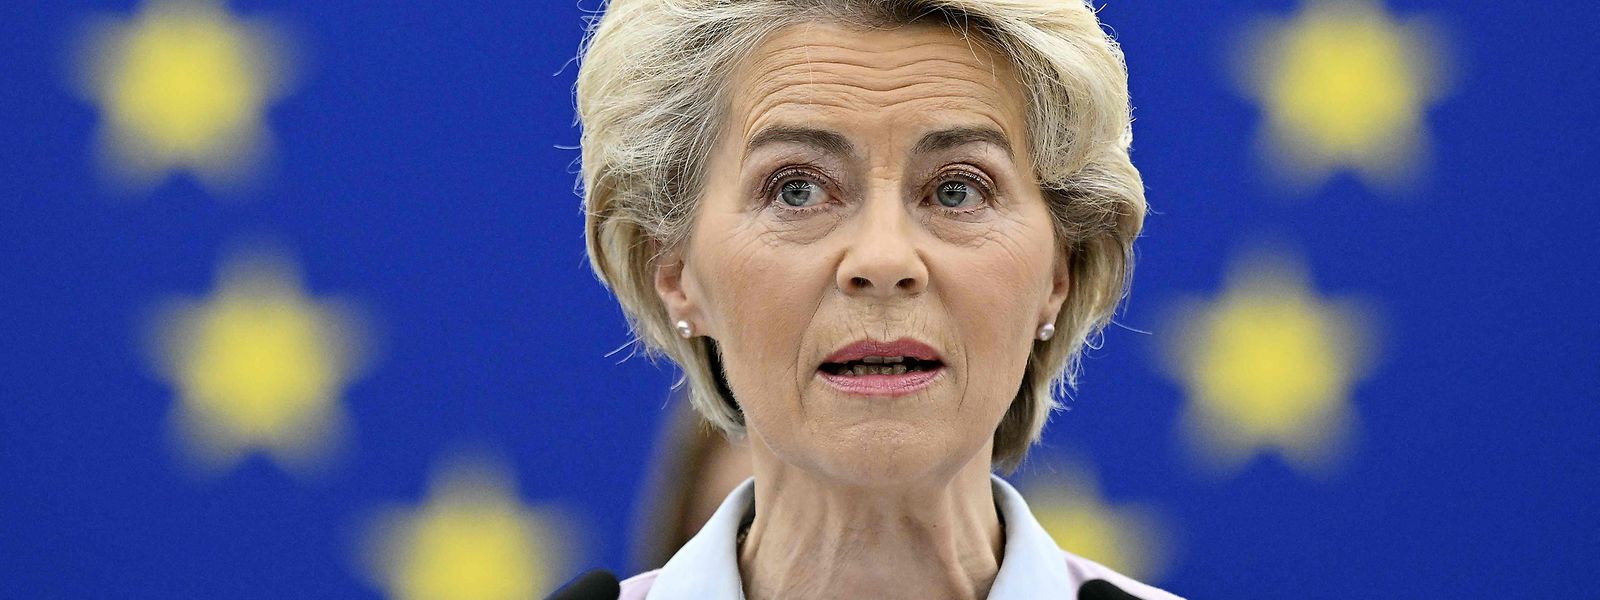 „Wir müssen – gerade jetzt – auf Kurs bleiben“, warnt die EU-Kommissionspräsidentin Ursula von der Leyen vor dem Gipfel in Brüssel. 